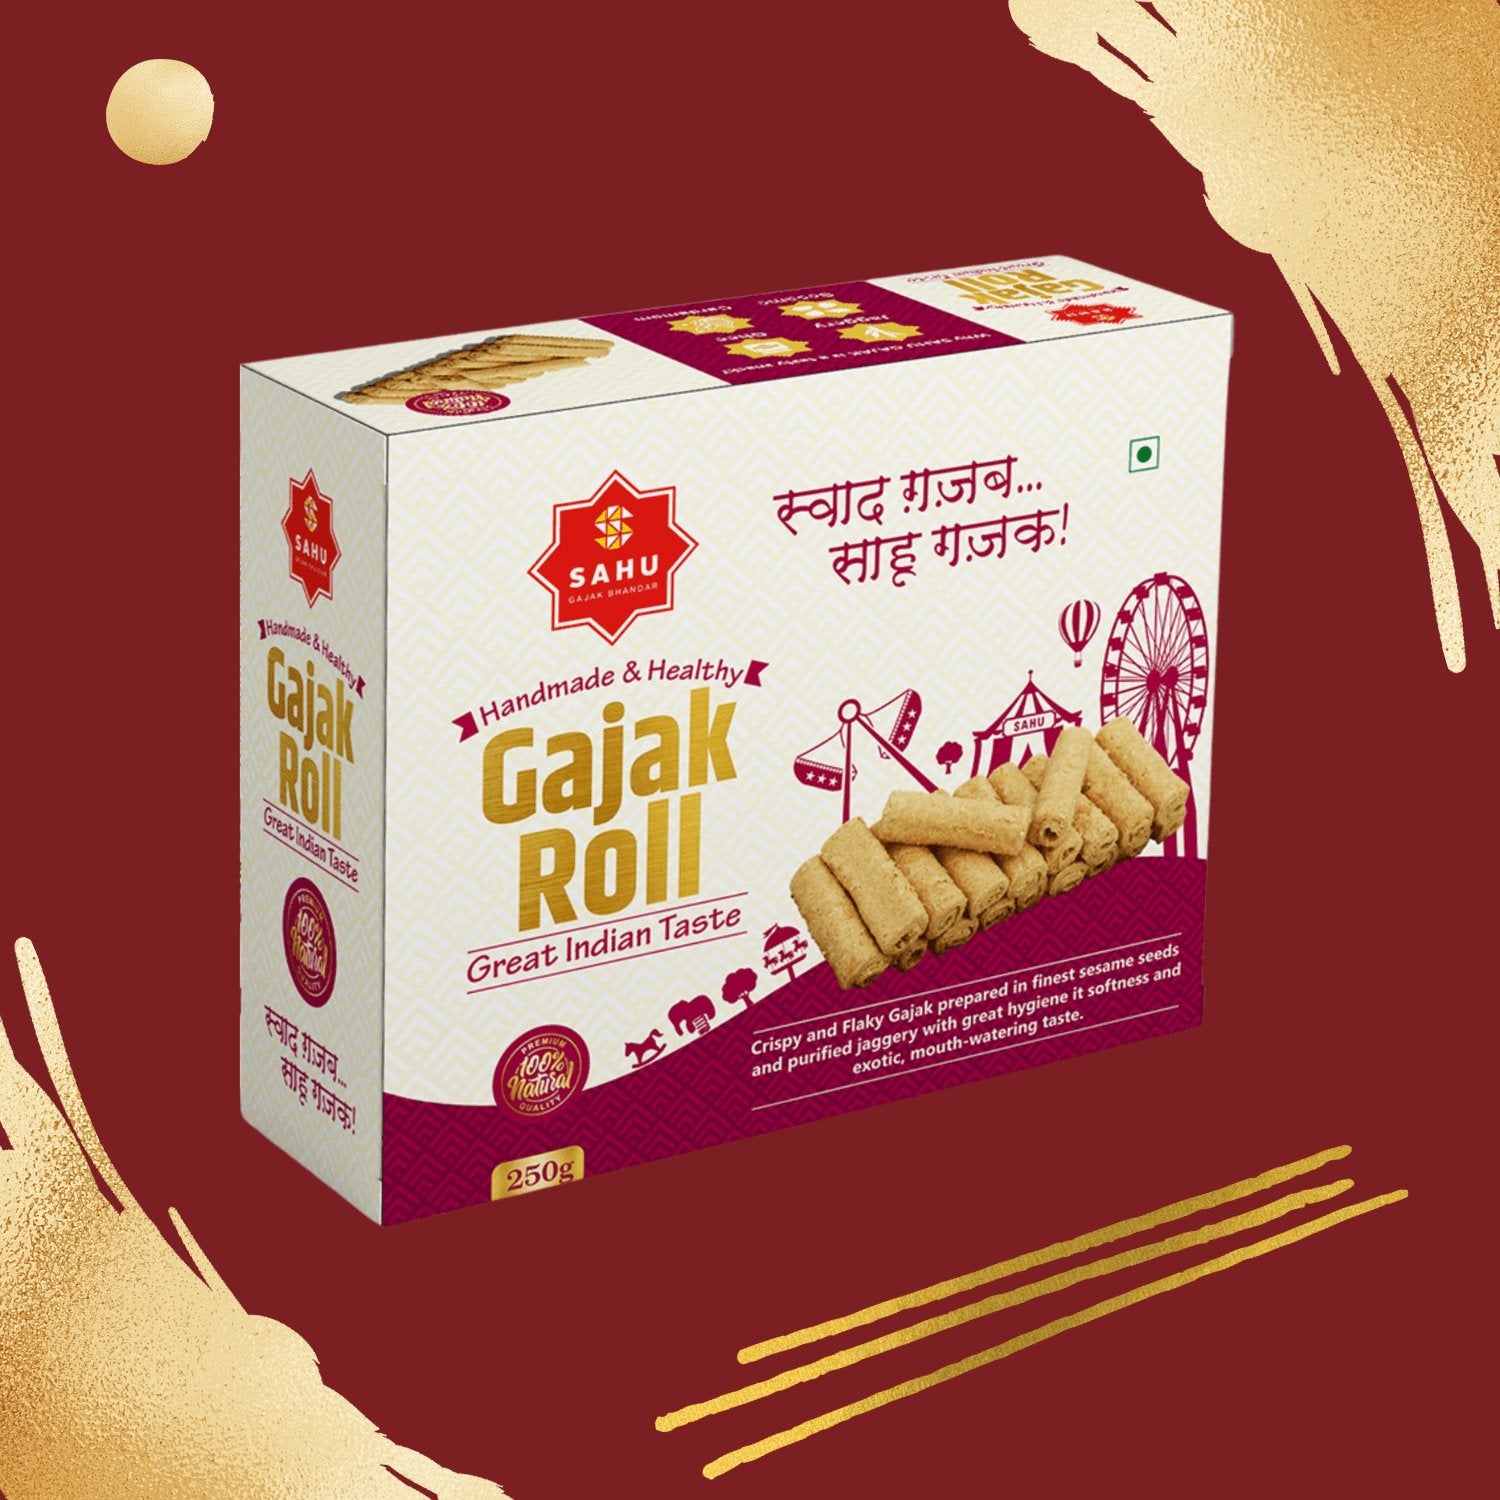 Roll Gajak 250 Gram by Sahu Gajak Bhandar - Sahu Gajak Bhandar